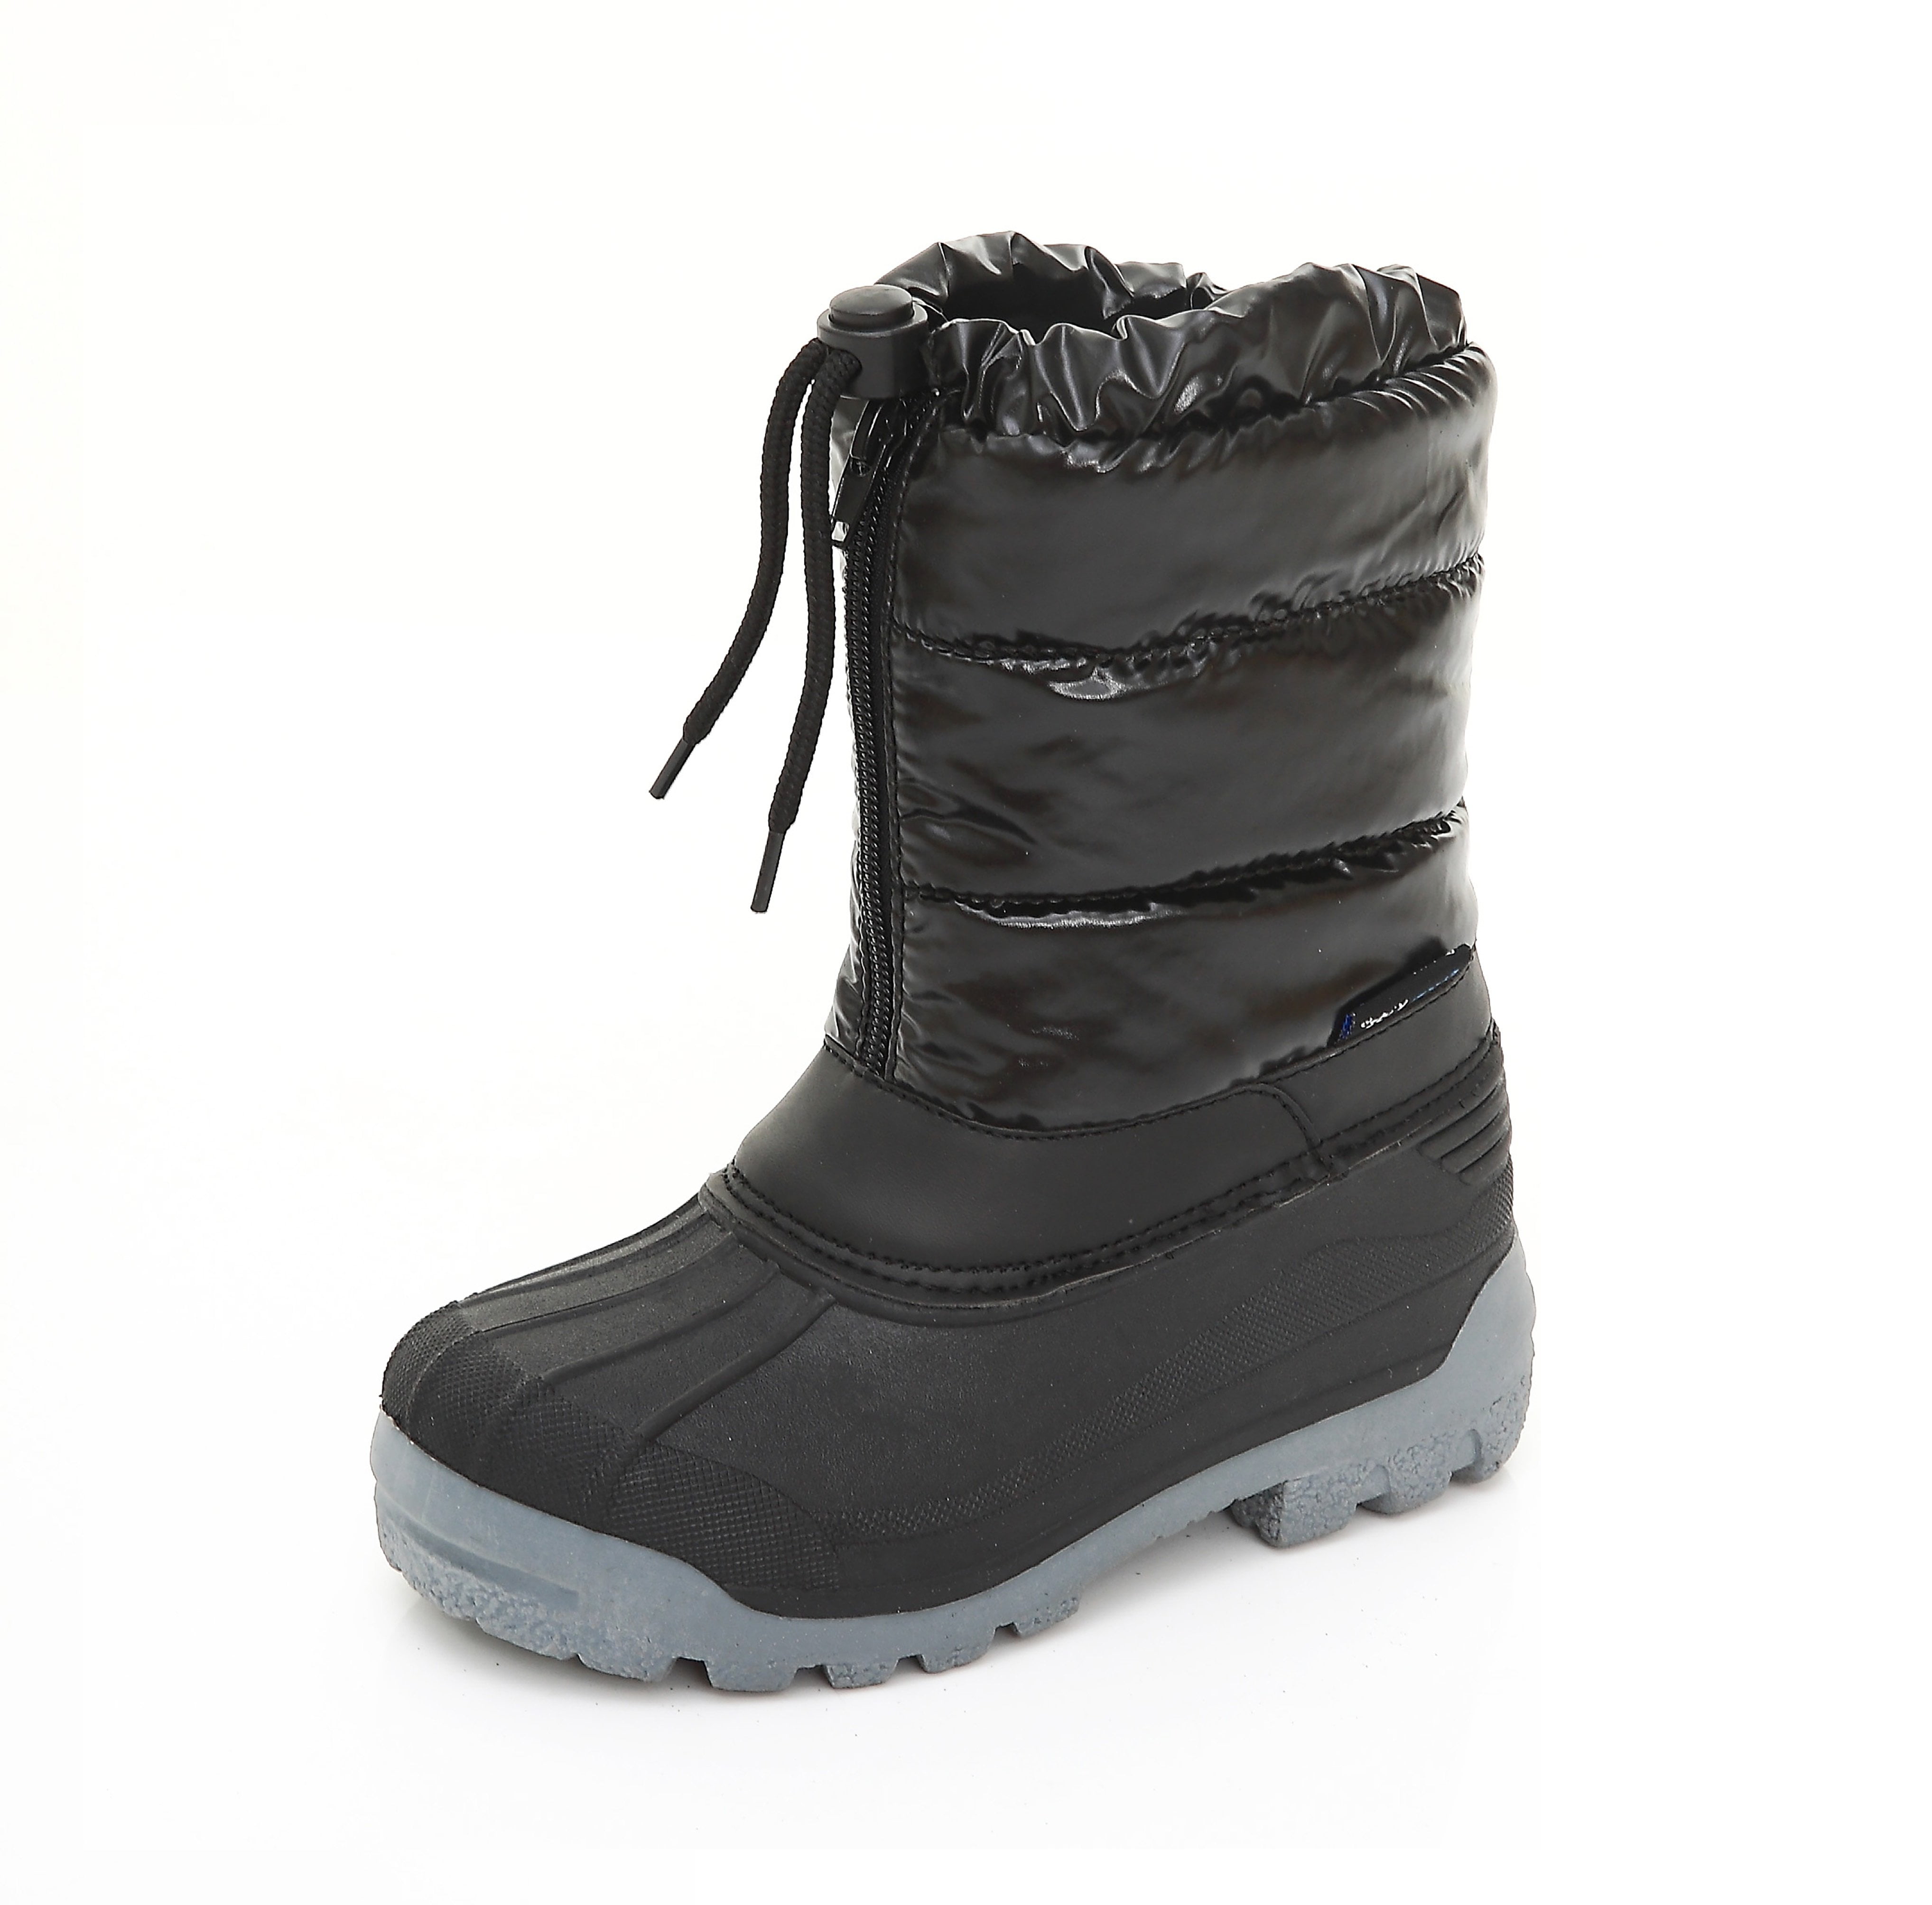 Storm Kidz - unisex kids winter snow boots - insulated zipper & bungee ...